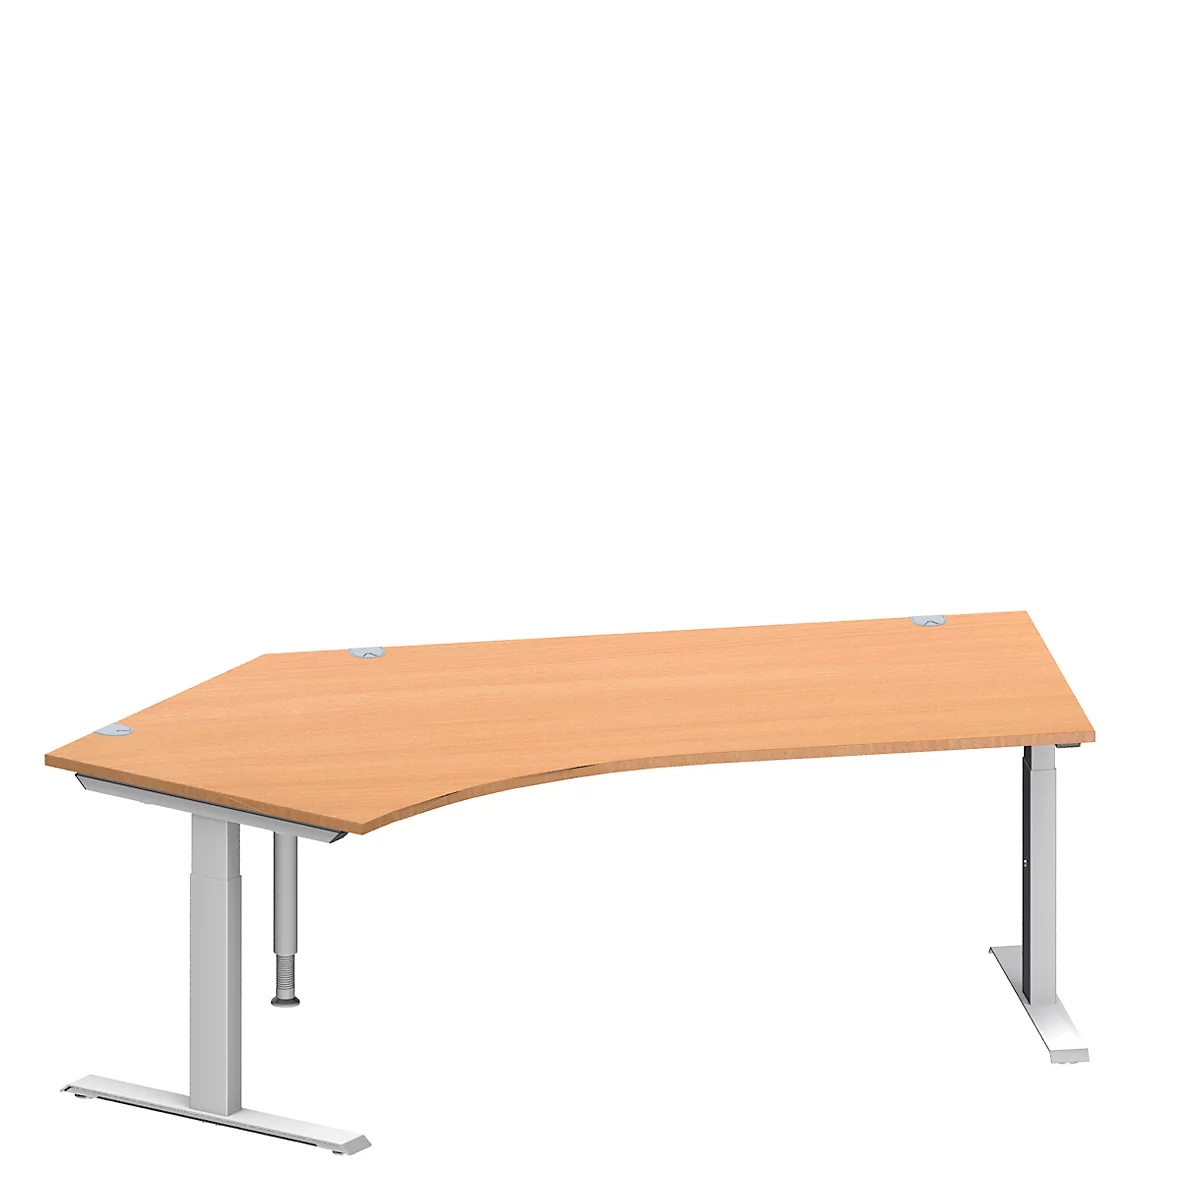 Schäfer Shop Genius escritorio angular MODENA FLEX, ángulo de 135° a la izquierda, tubo rectangular con pie en T, An 2165 x Pr 800/800 x Al 650-850 mm, haya/alu blanco